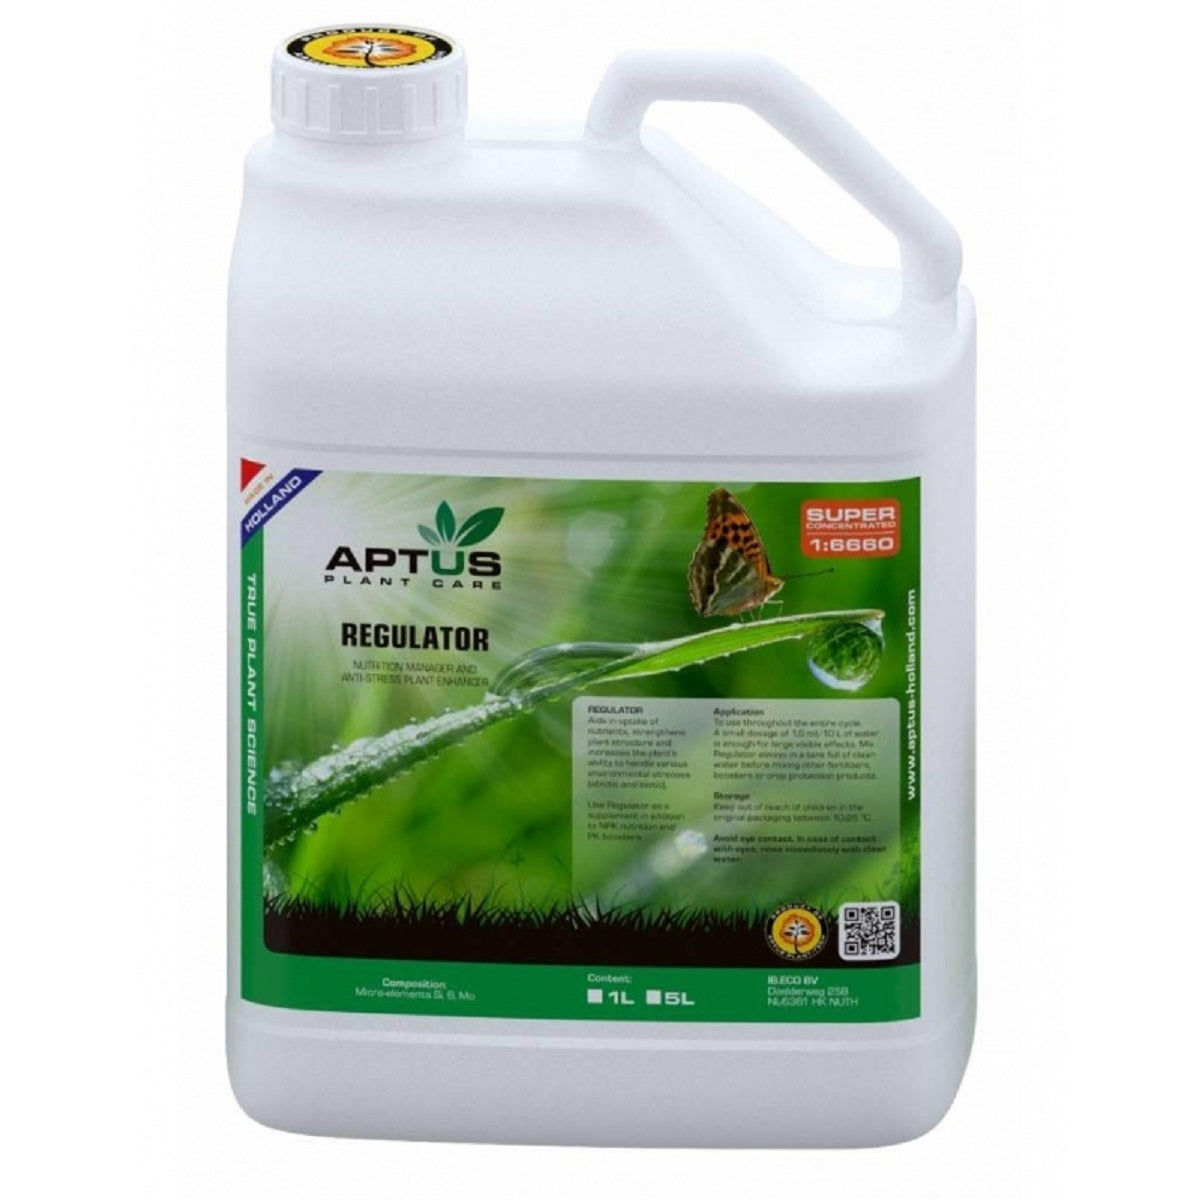 Le stimulateur de croissance et floraison Aptus Regulator 5 litres